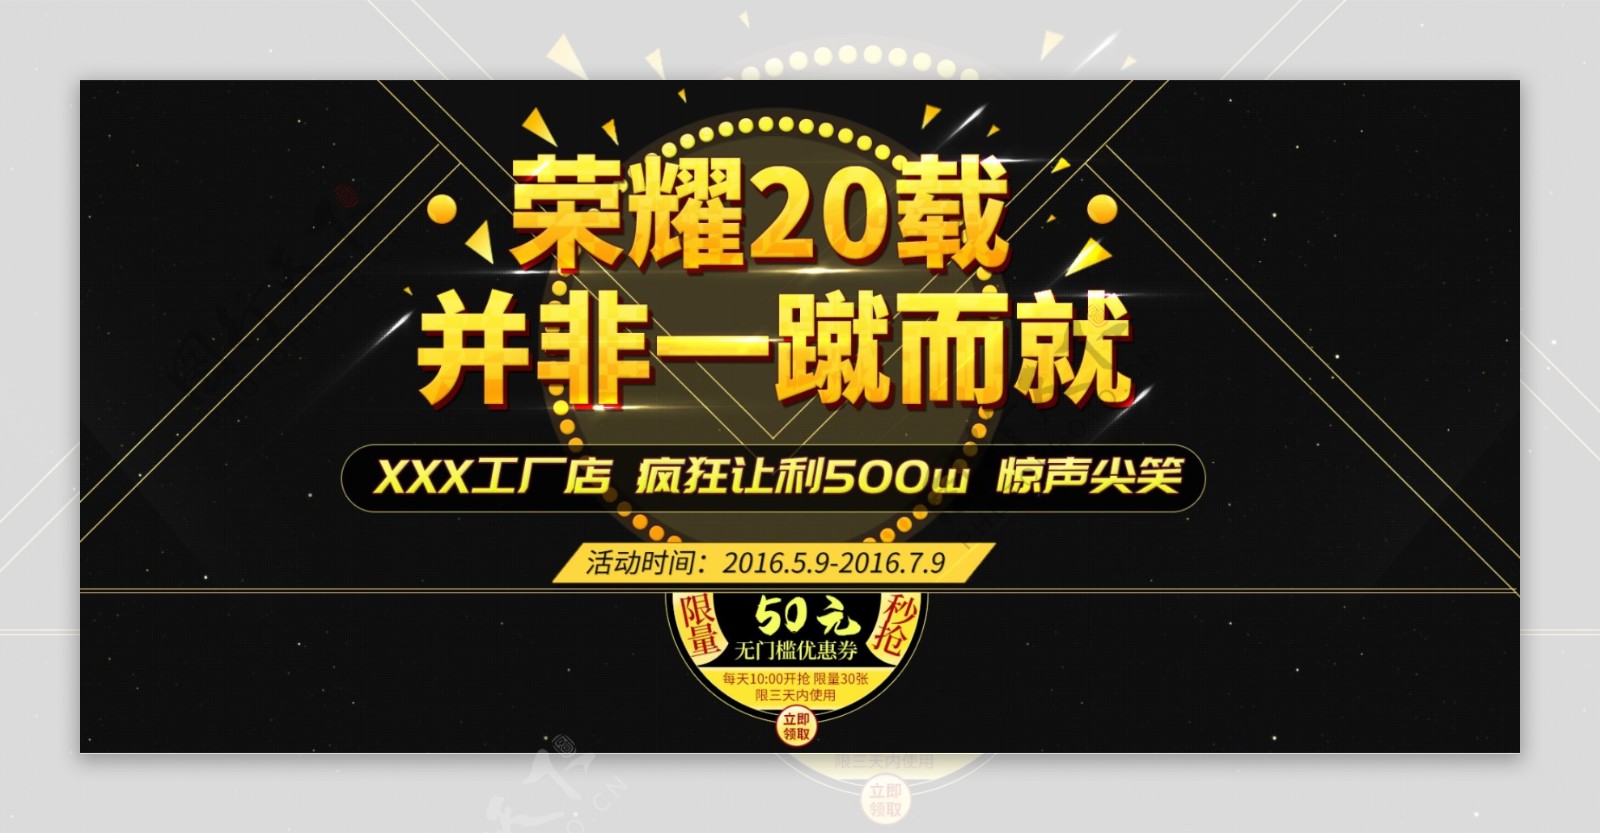 荣耀20年周年庆黑色高端背景海报